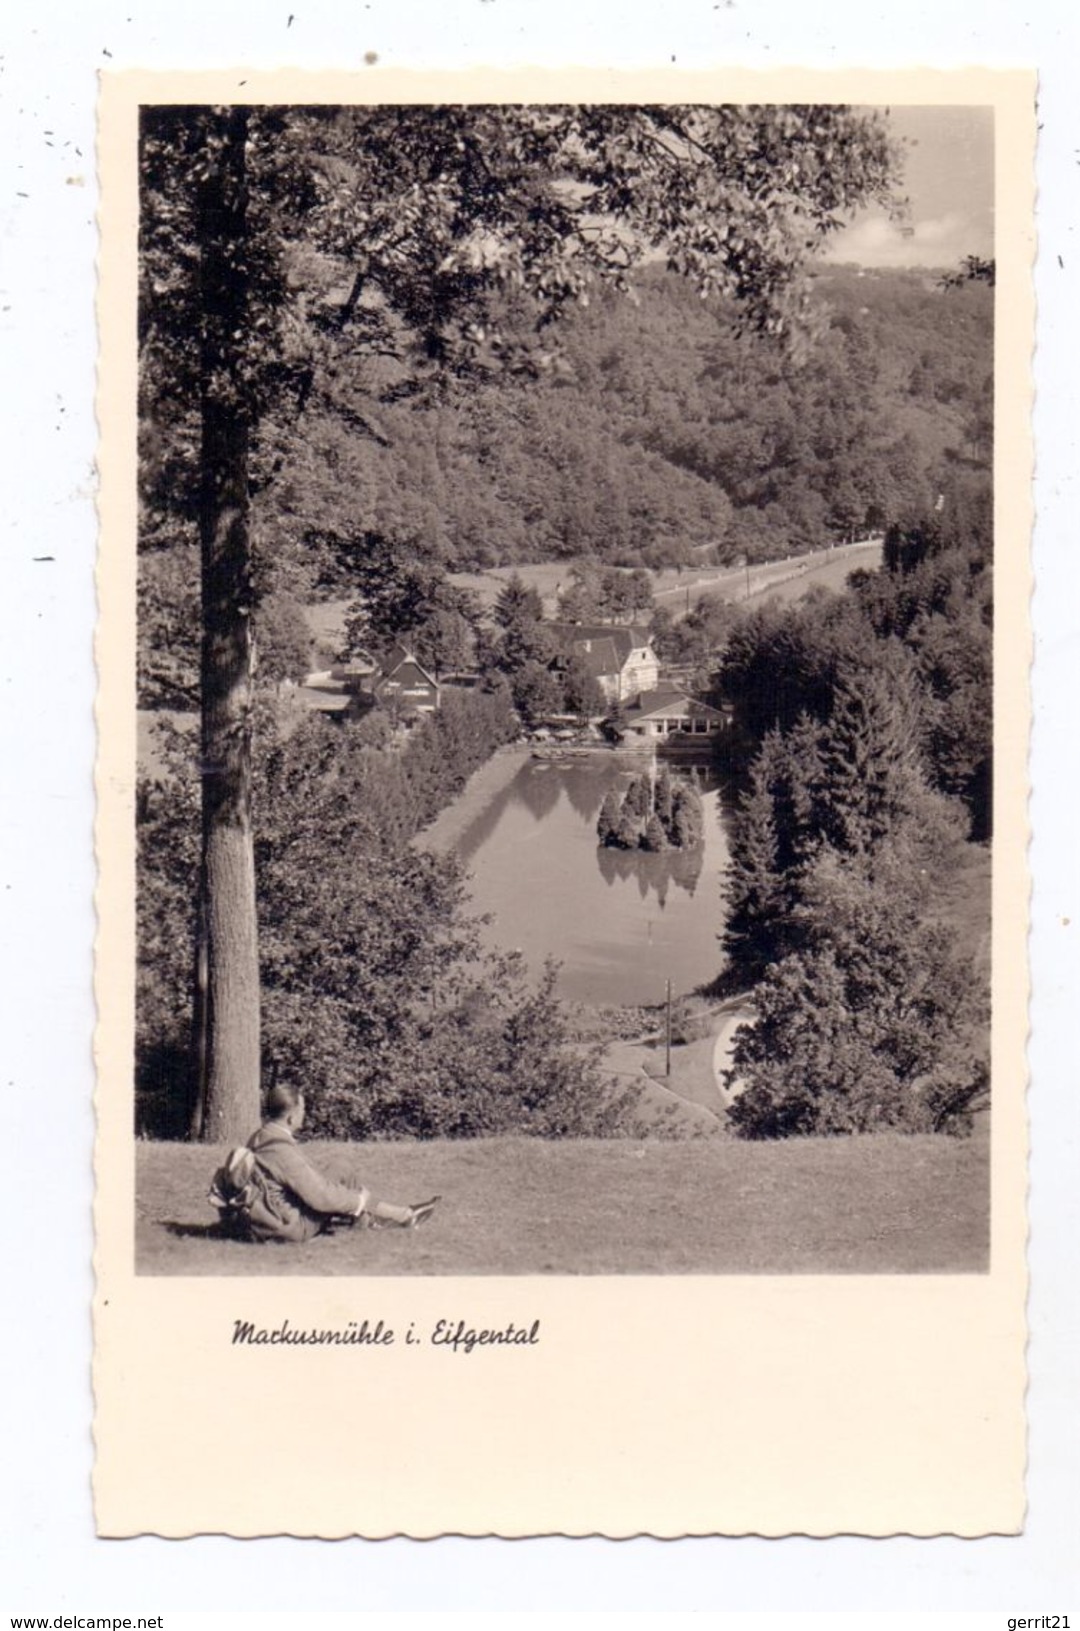 5632 WERMELSKIRCHEN - DABRINGHAUSEN, Markusmühle Im Eifgental, 1954 - Wermelskirchen